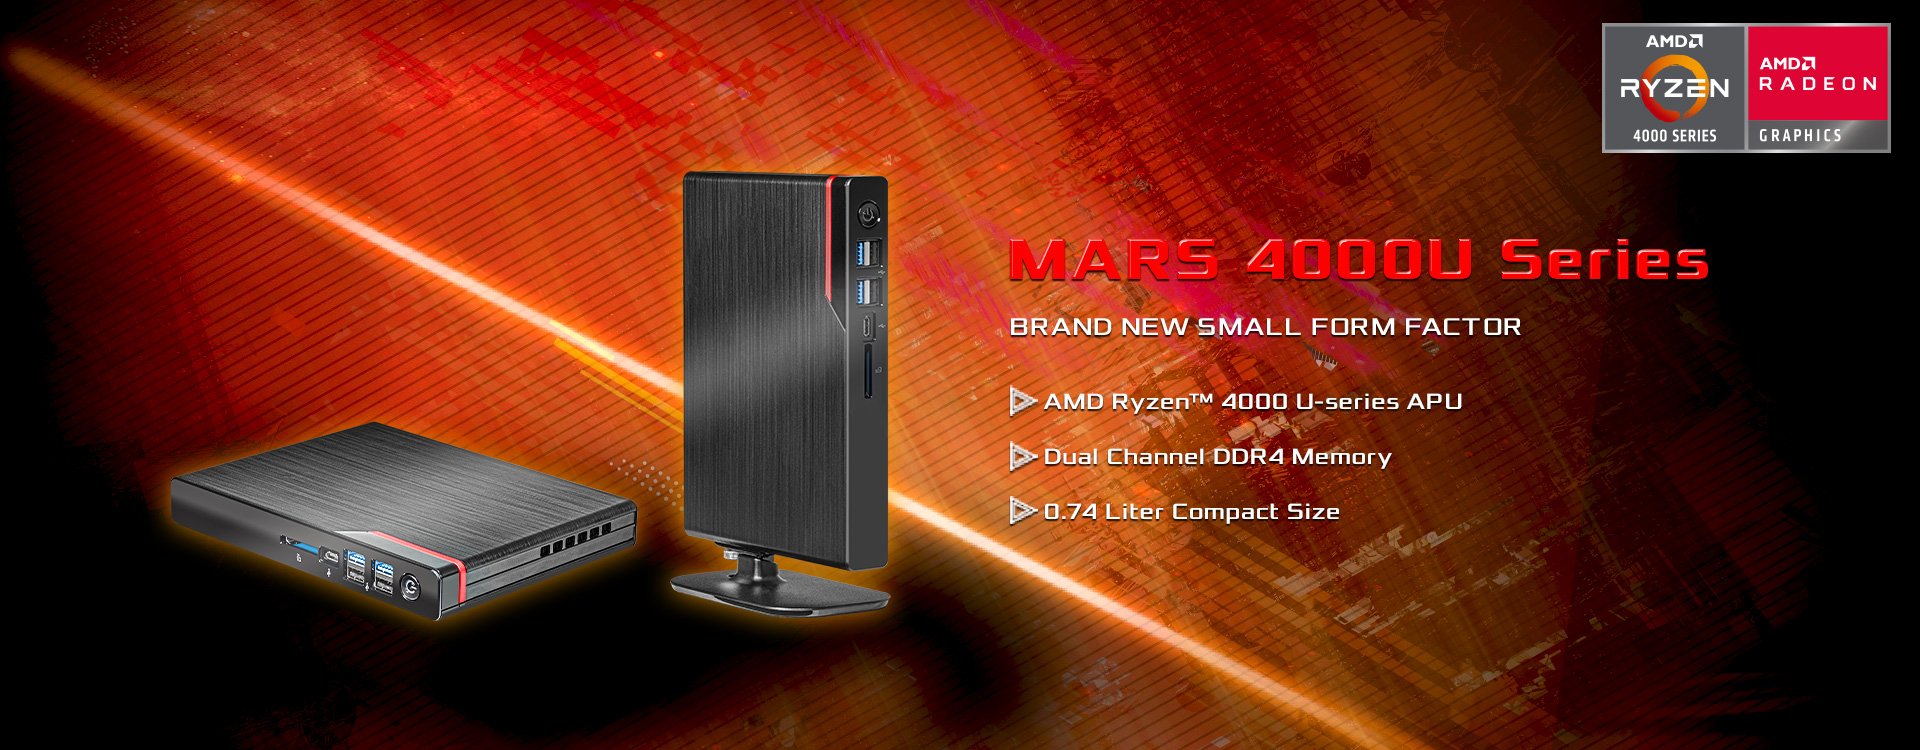 Mars 4000U Series